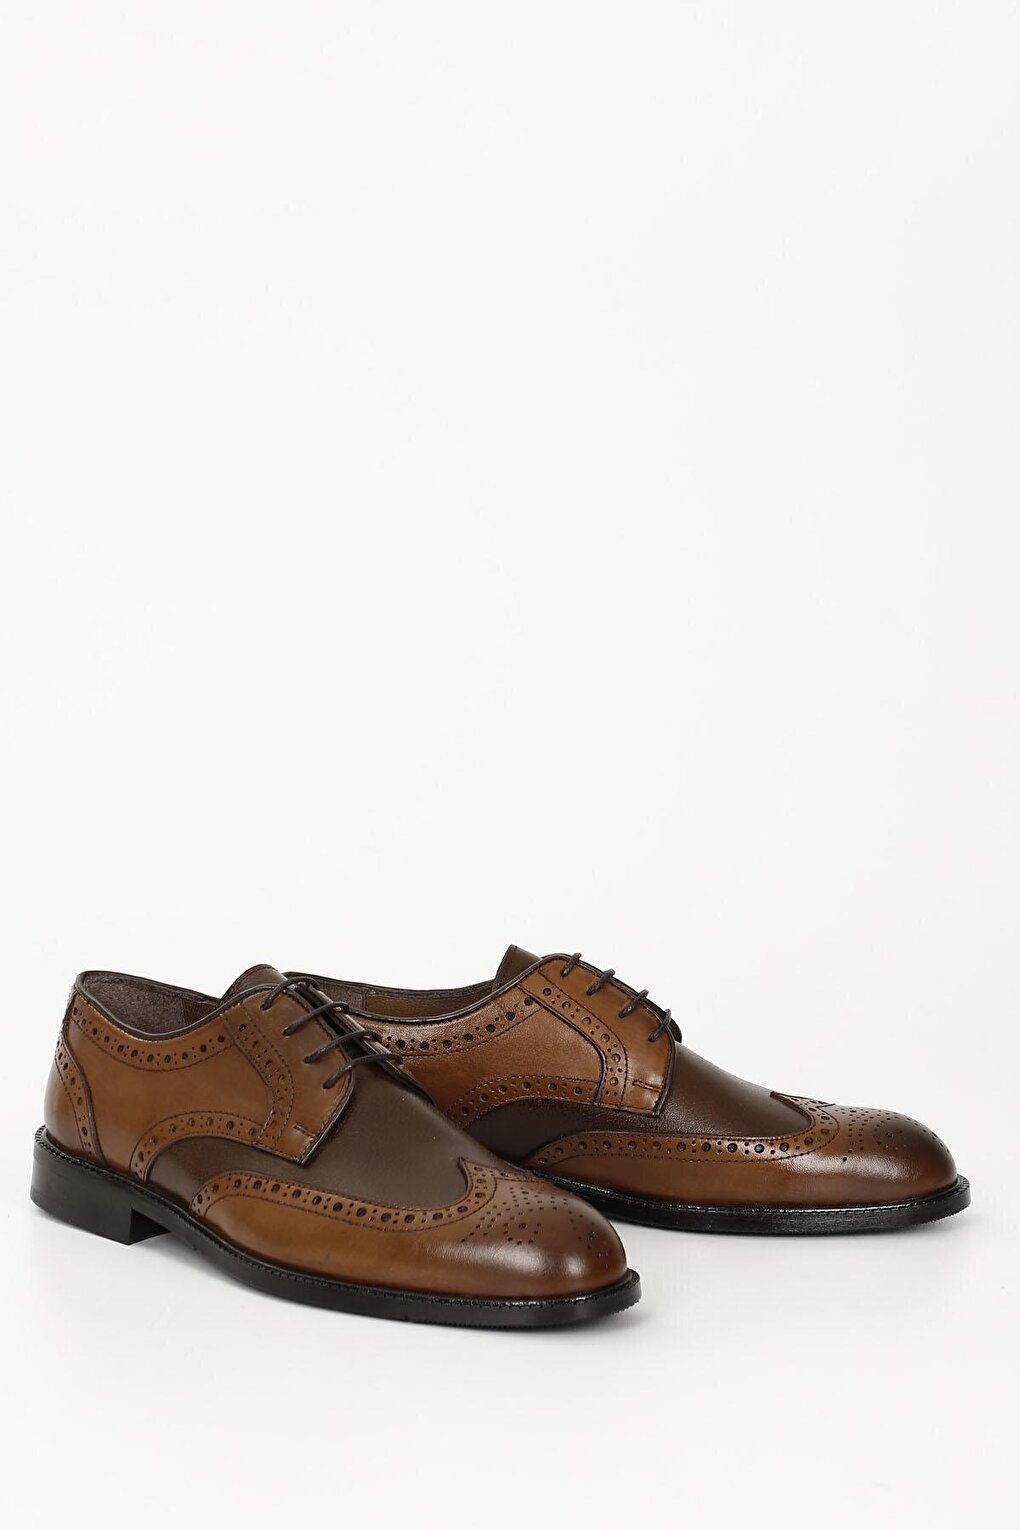 TABA-BROWN Платиновая повседневная мужская обувь из натуральной кожи на шнуровке 01939 GÖNDERİ(R)